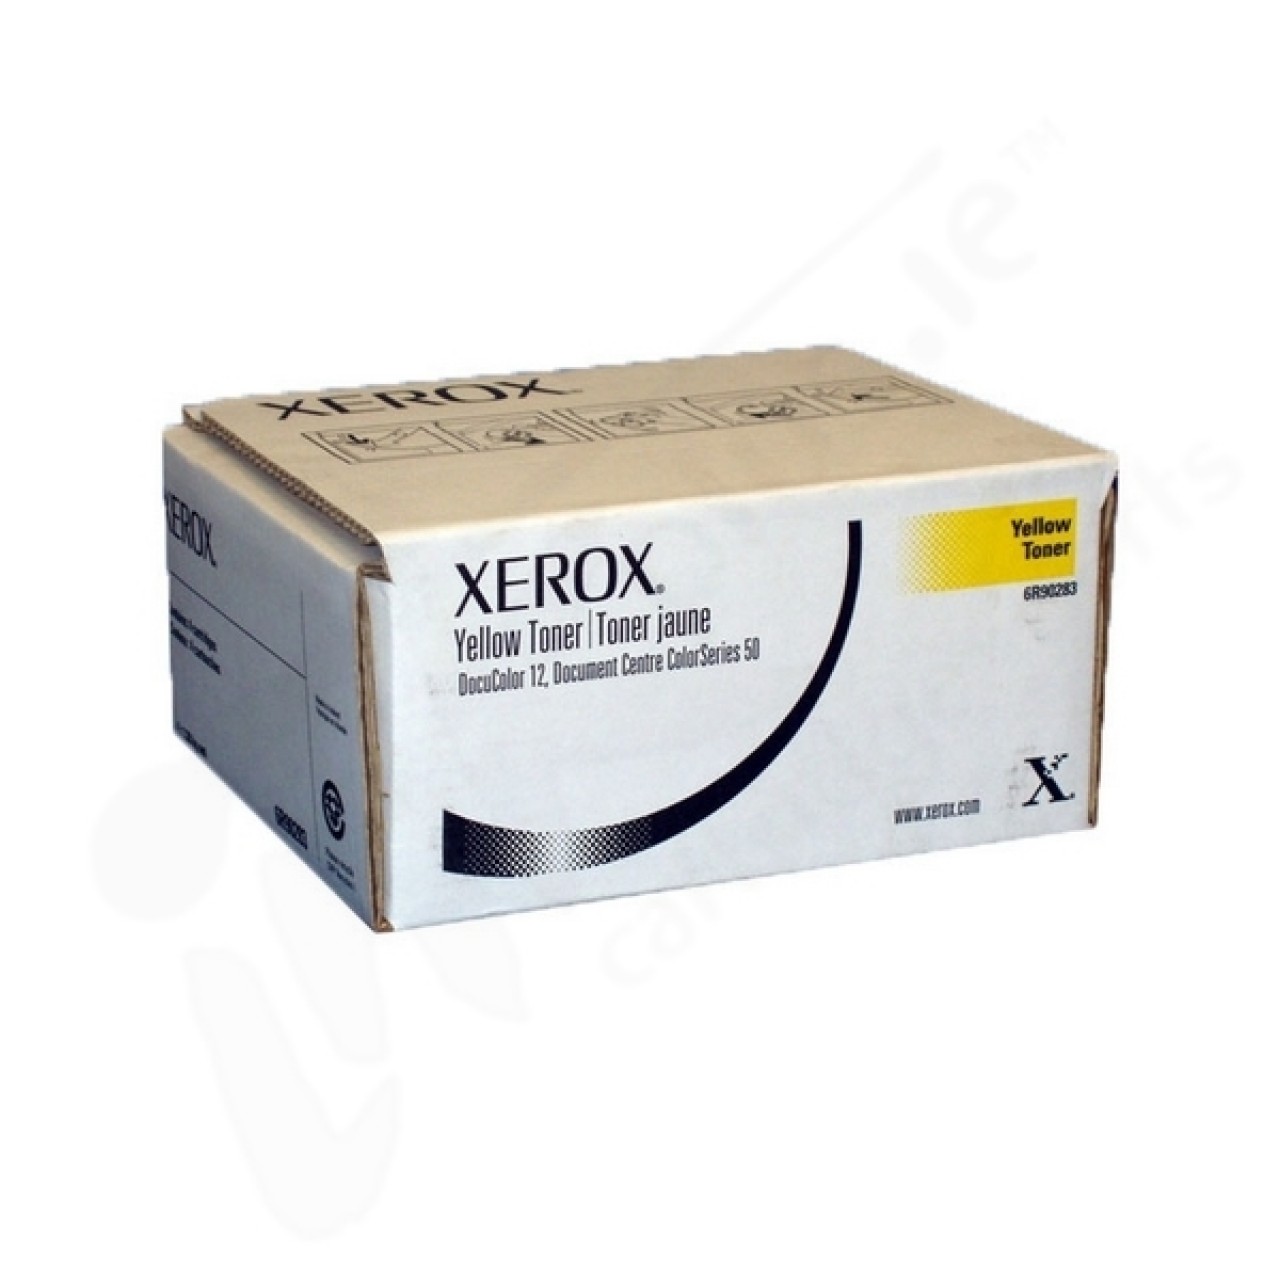 Τόνερ Xerox Original - 6R90283 Yellow 350gr. x 4pcs PACK για DocuColor 12, Document Centre ColorSeries 50